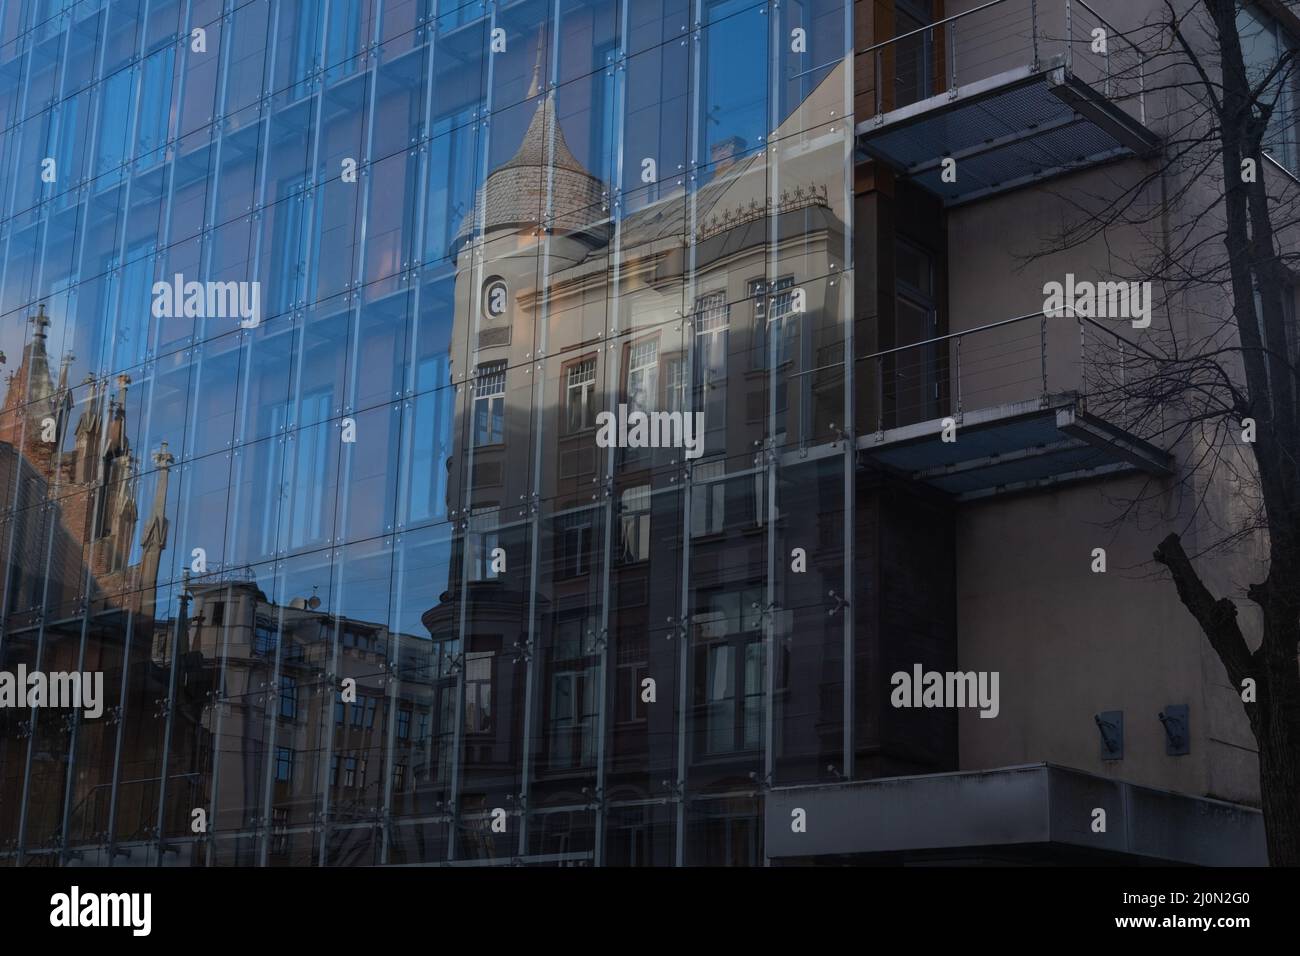 Un ancien bâtiment architectural se reflète dans un nouveau mur en verre et en aluminium Banque D'Images